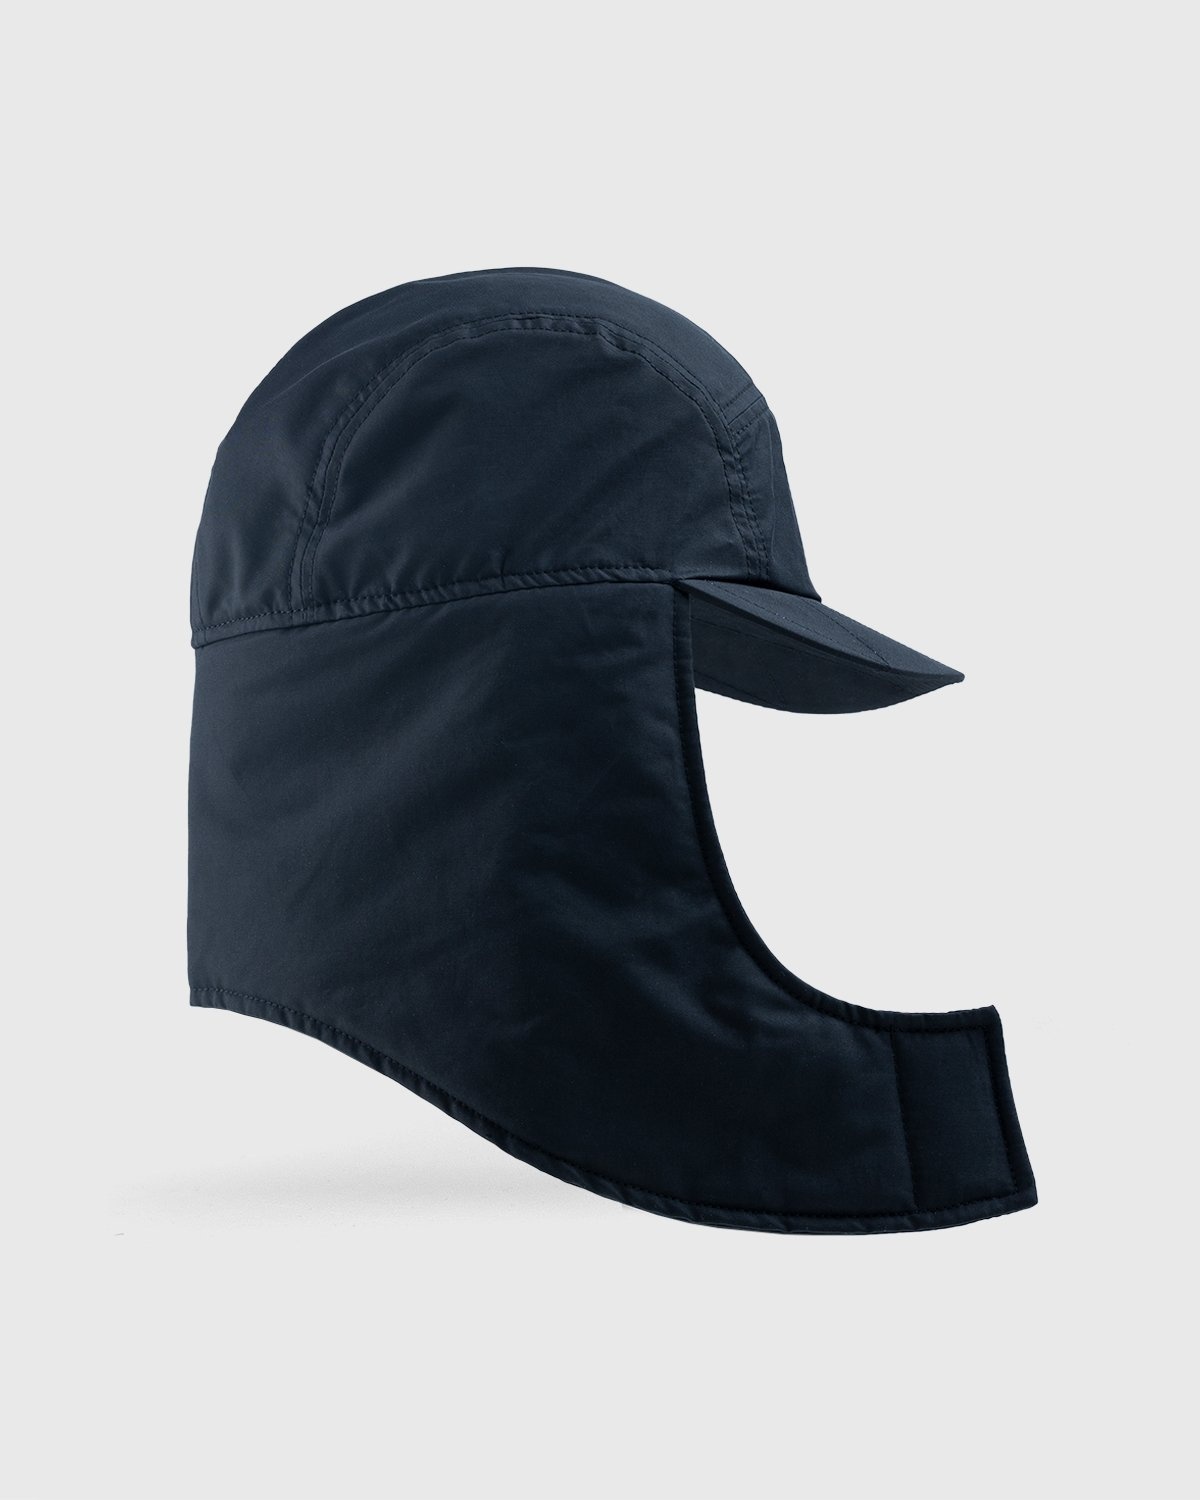 JACQUEMUS – La Casquette Cagoule Black - Hats - Black - Image 3